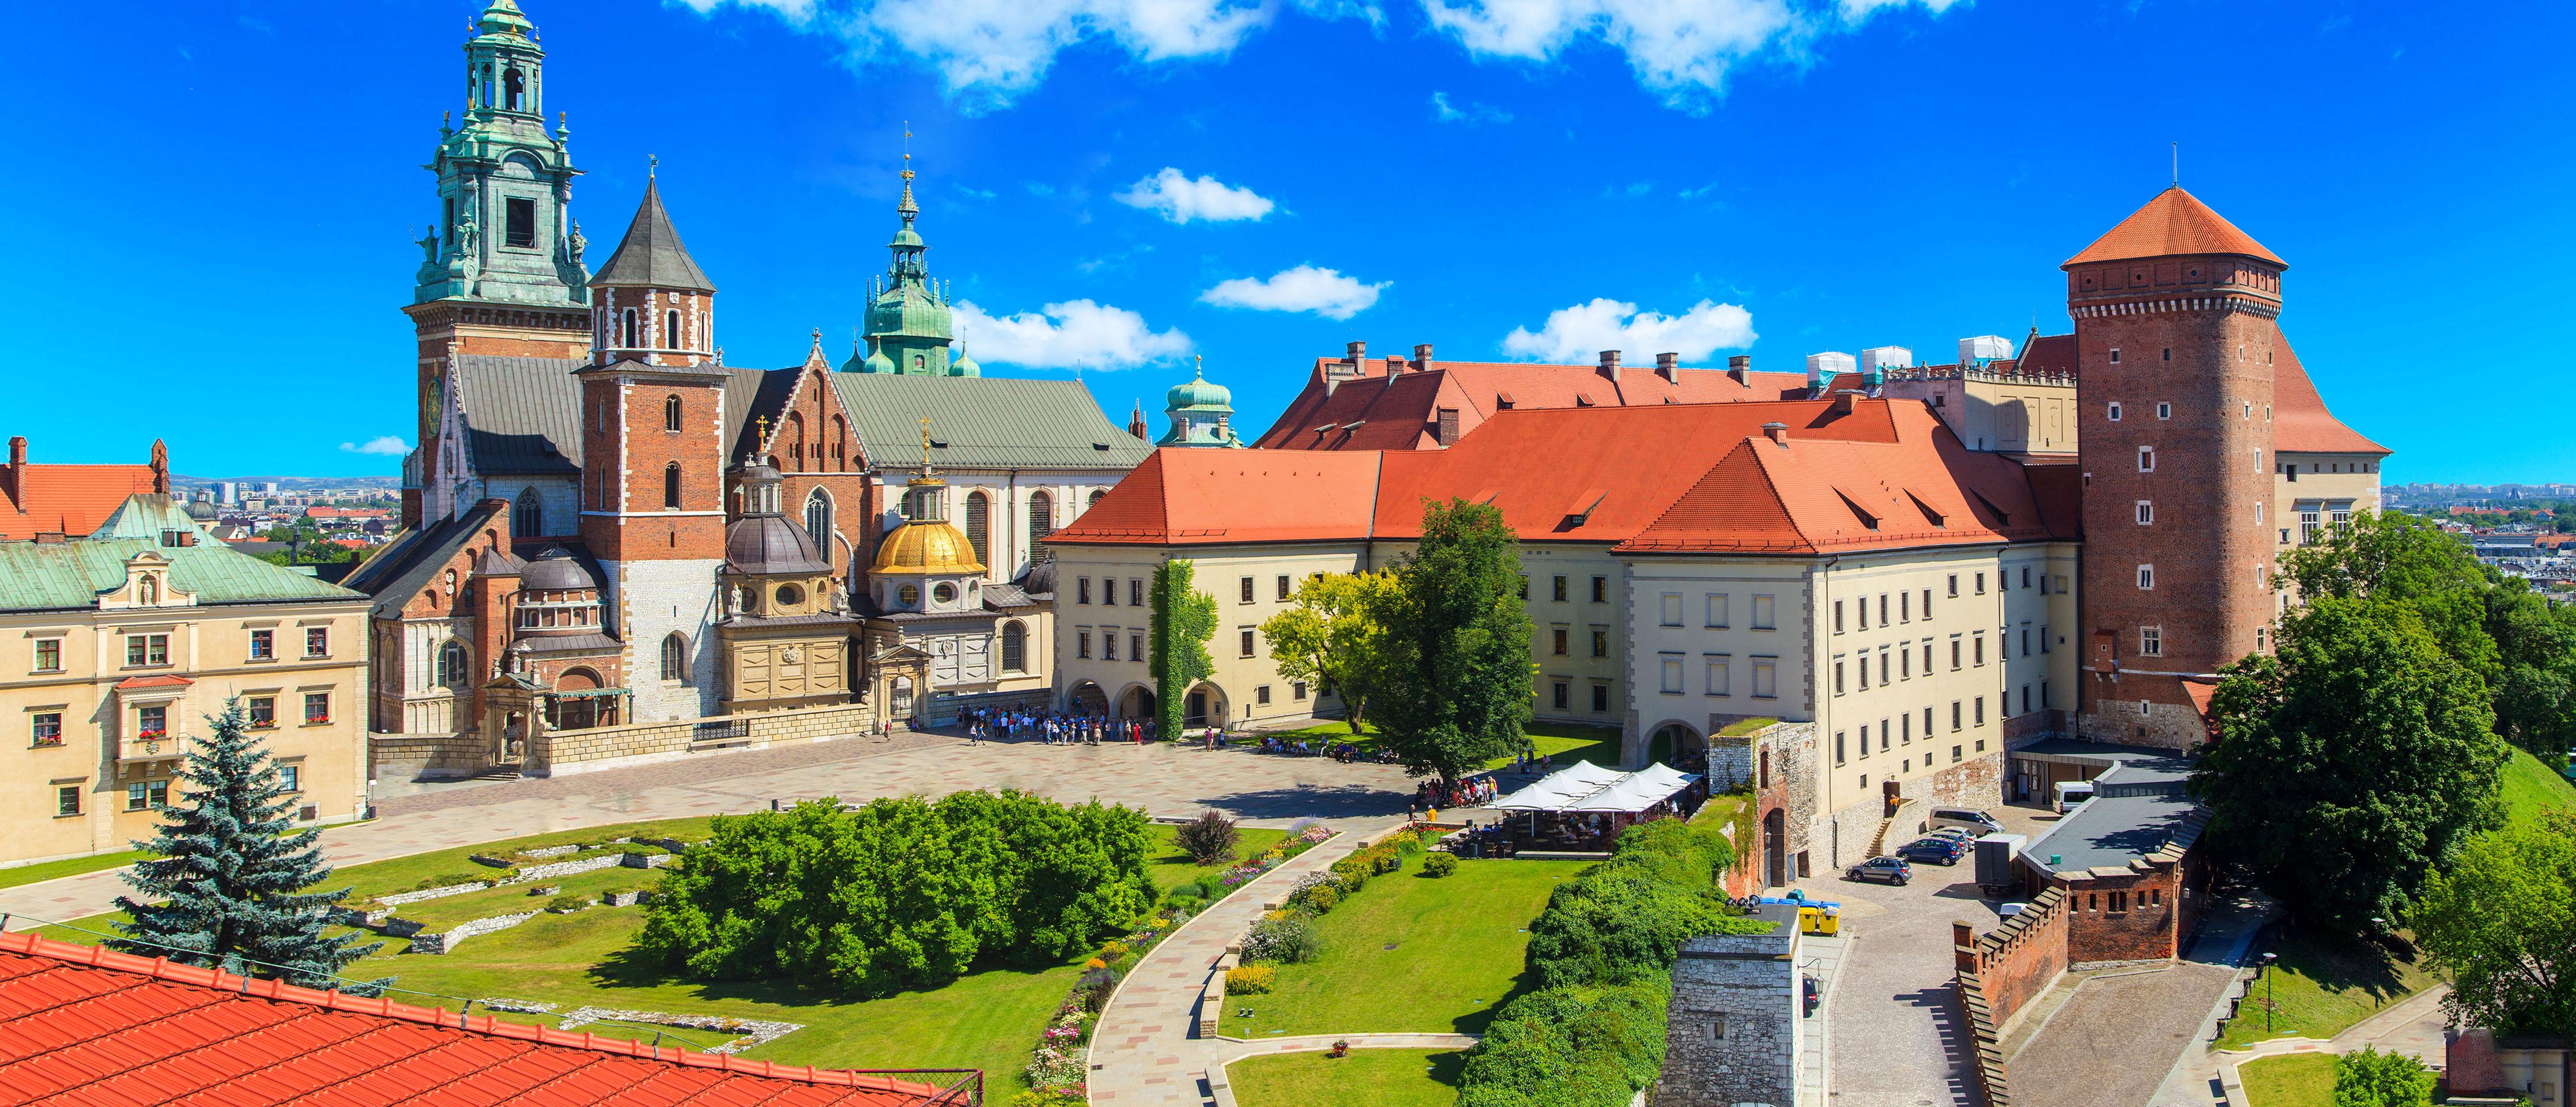 Visite guidée du château du Wawel - Cracovie